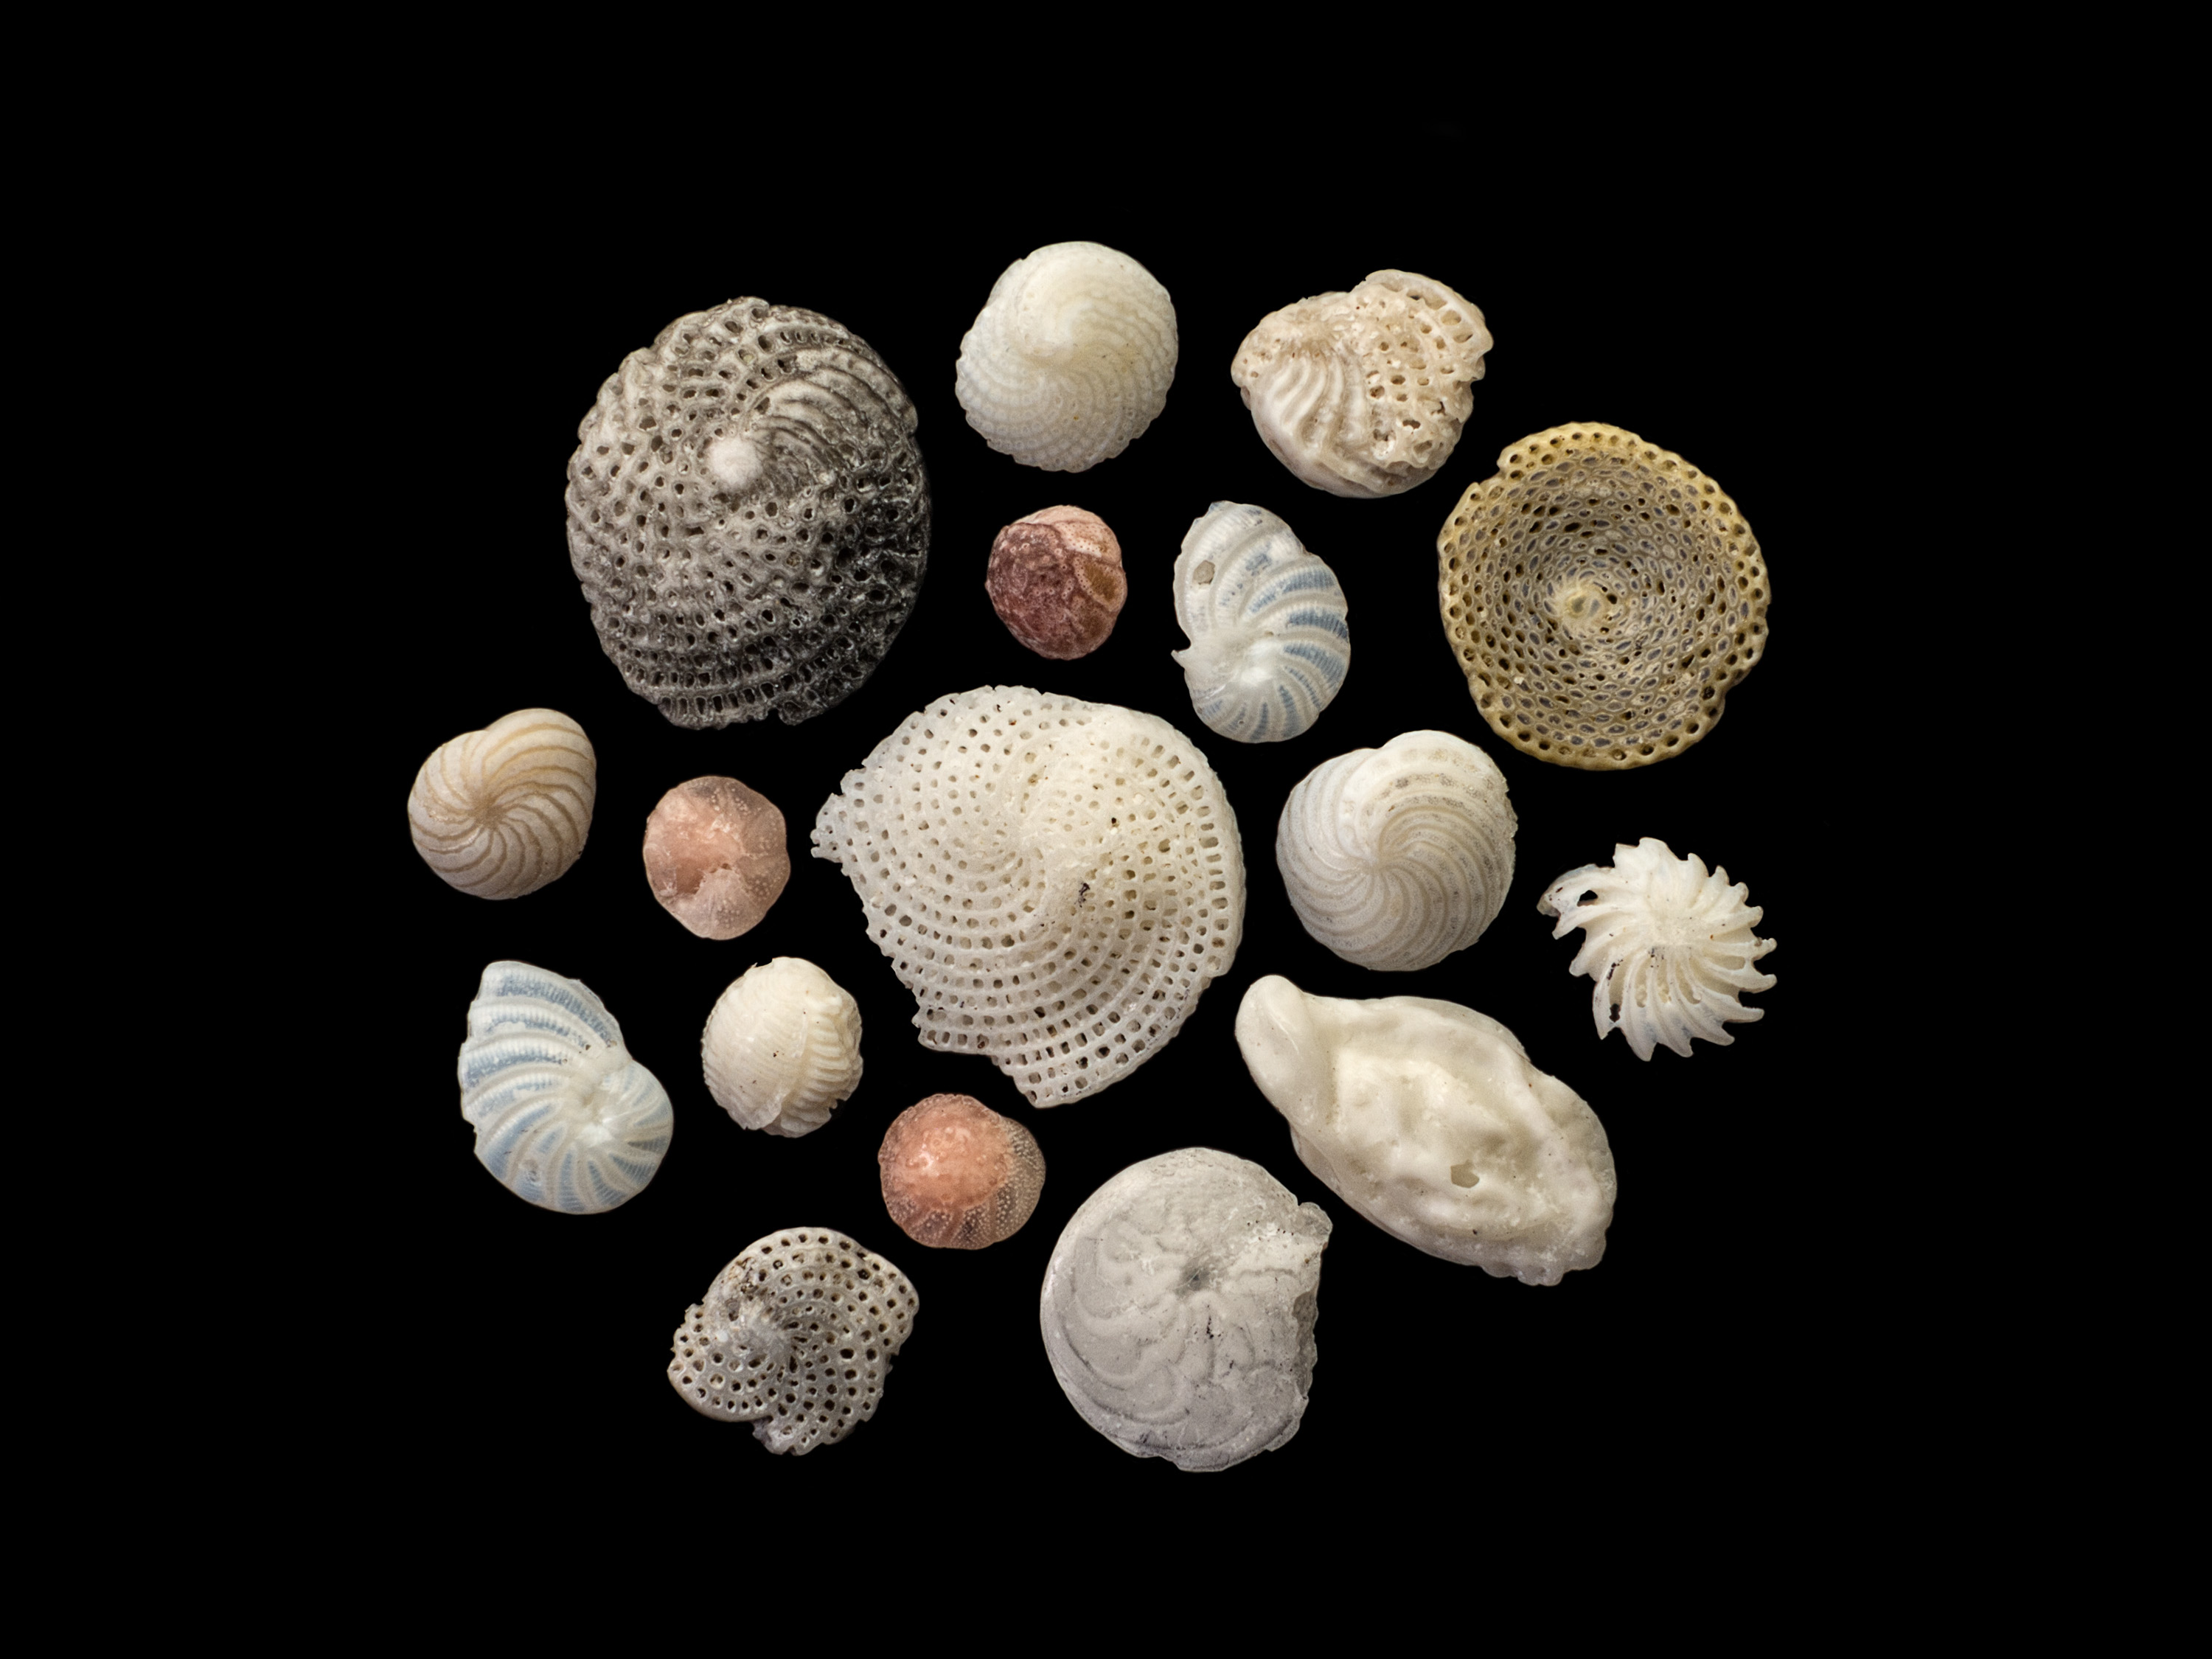 How Silvia Becker Photographs Curious, Microscopic Shells on the Beach